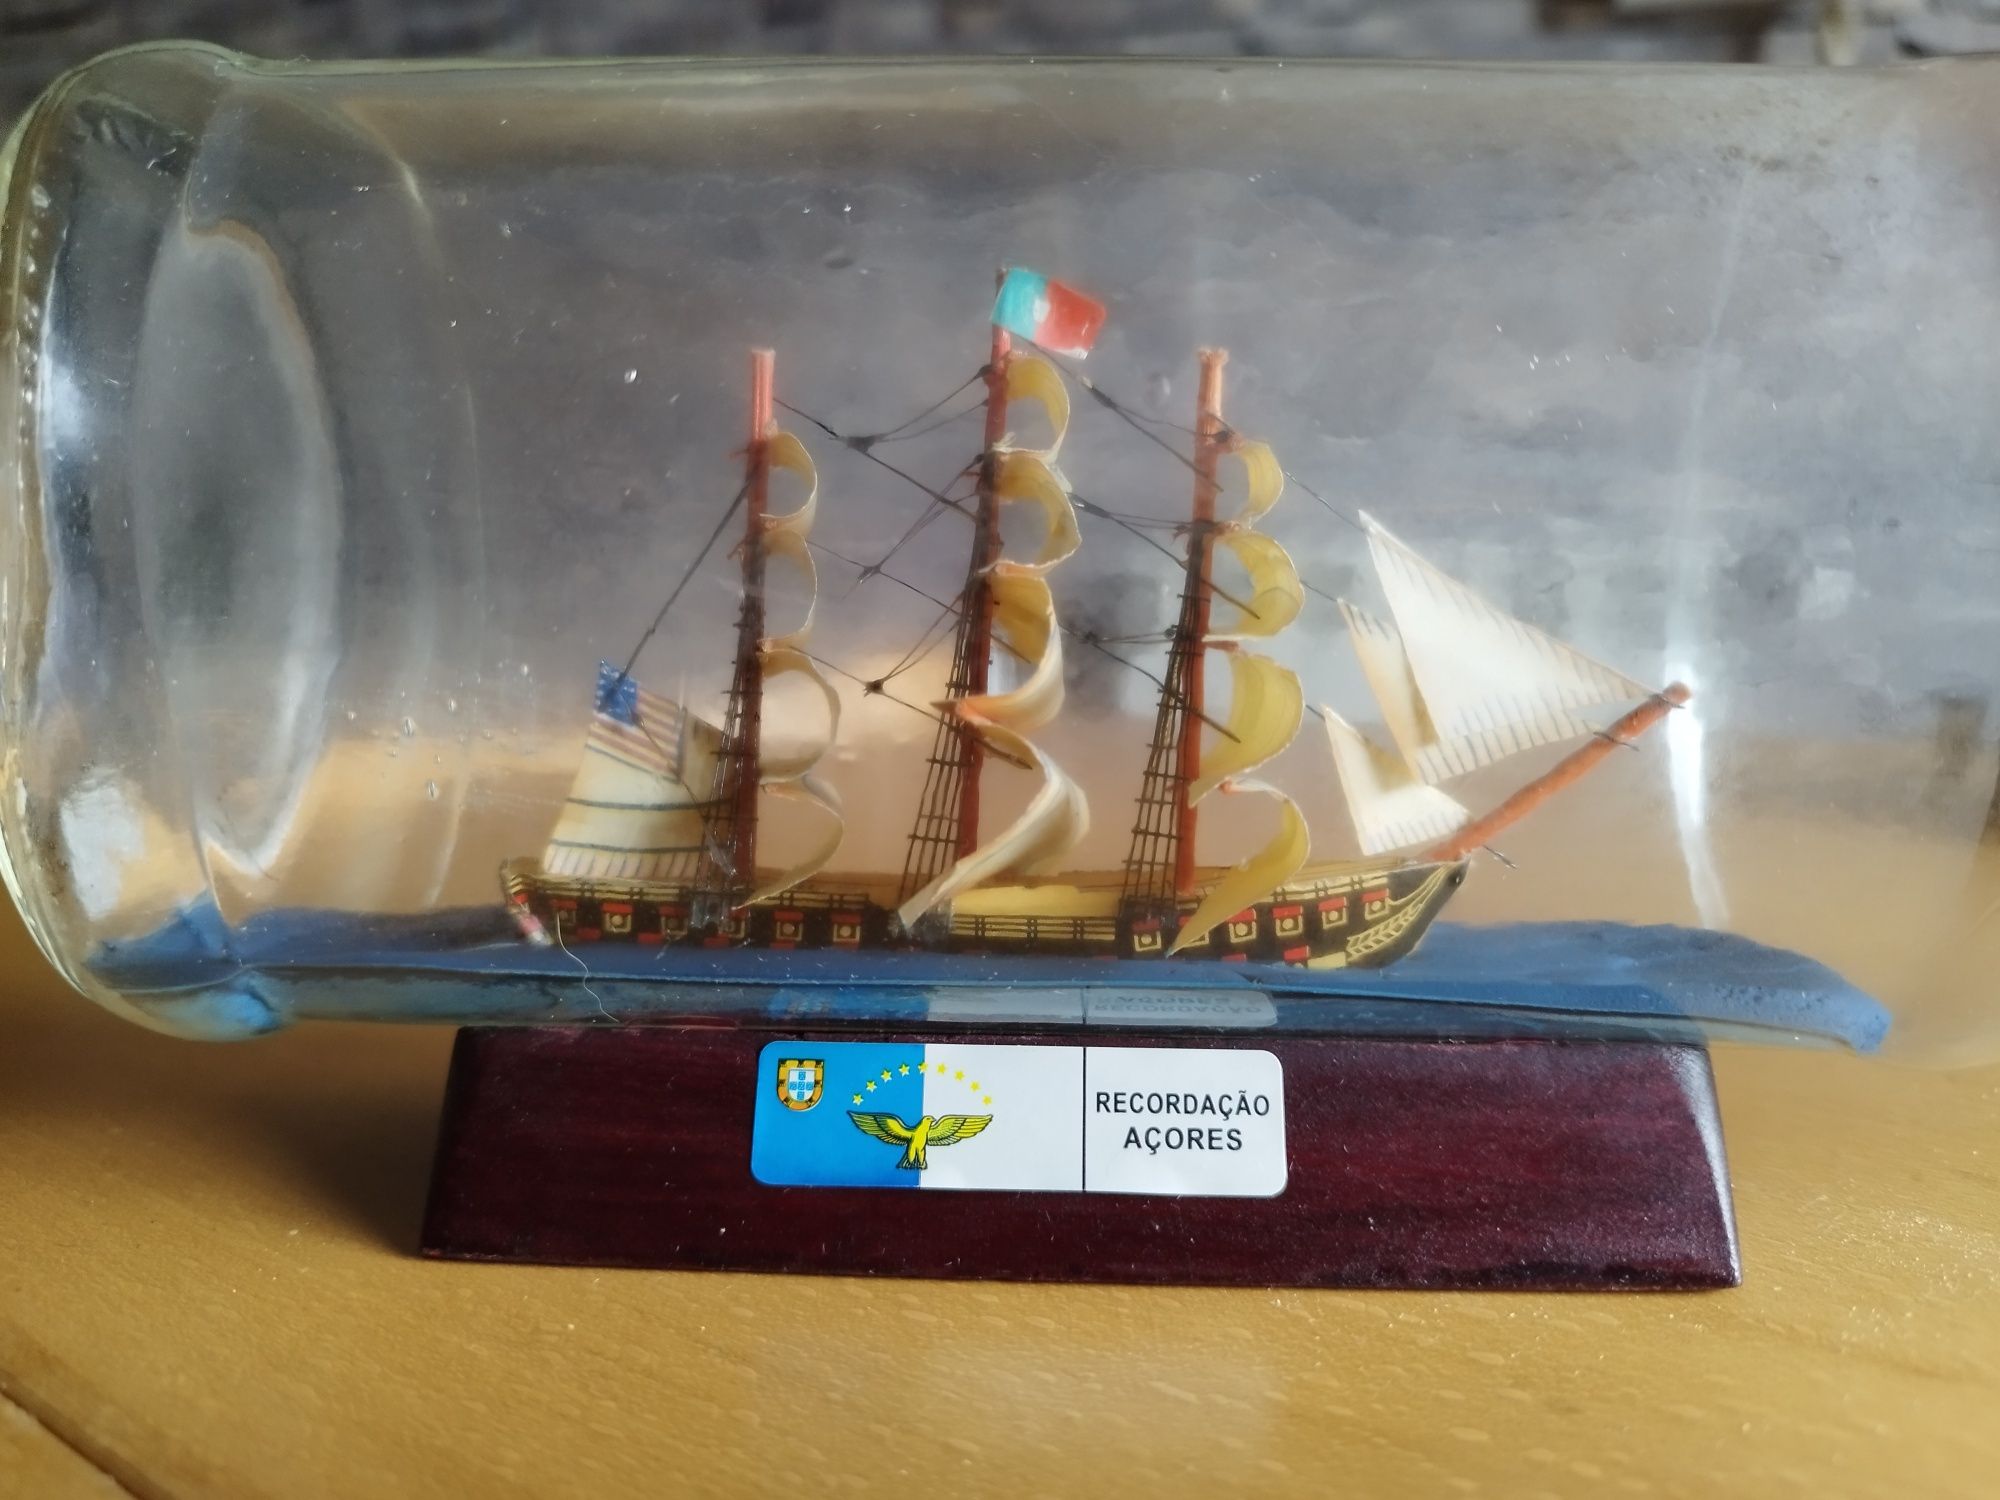 Garrafa com barco - recordação dos Açores